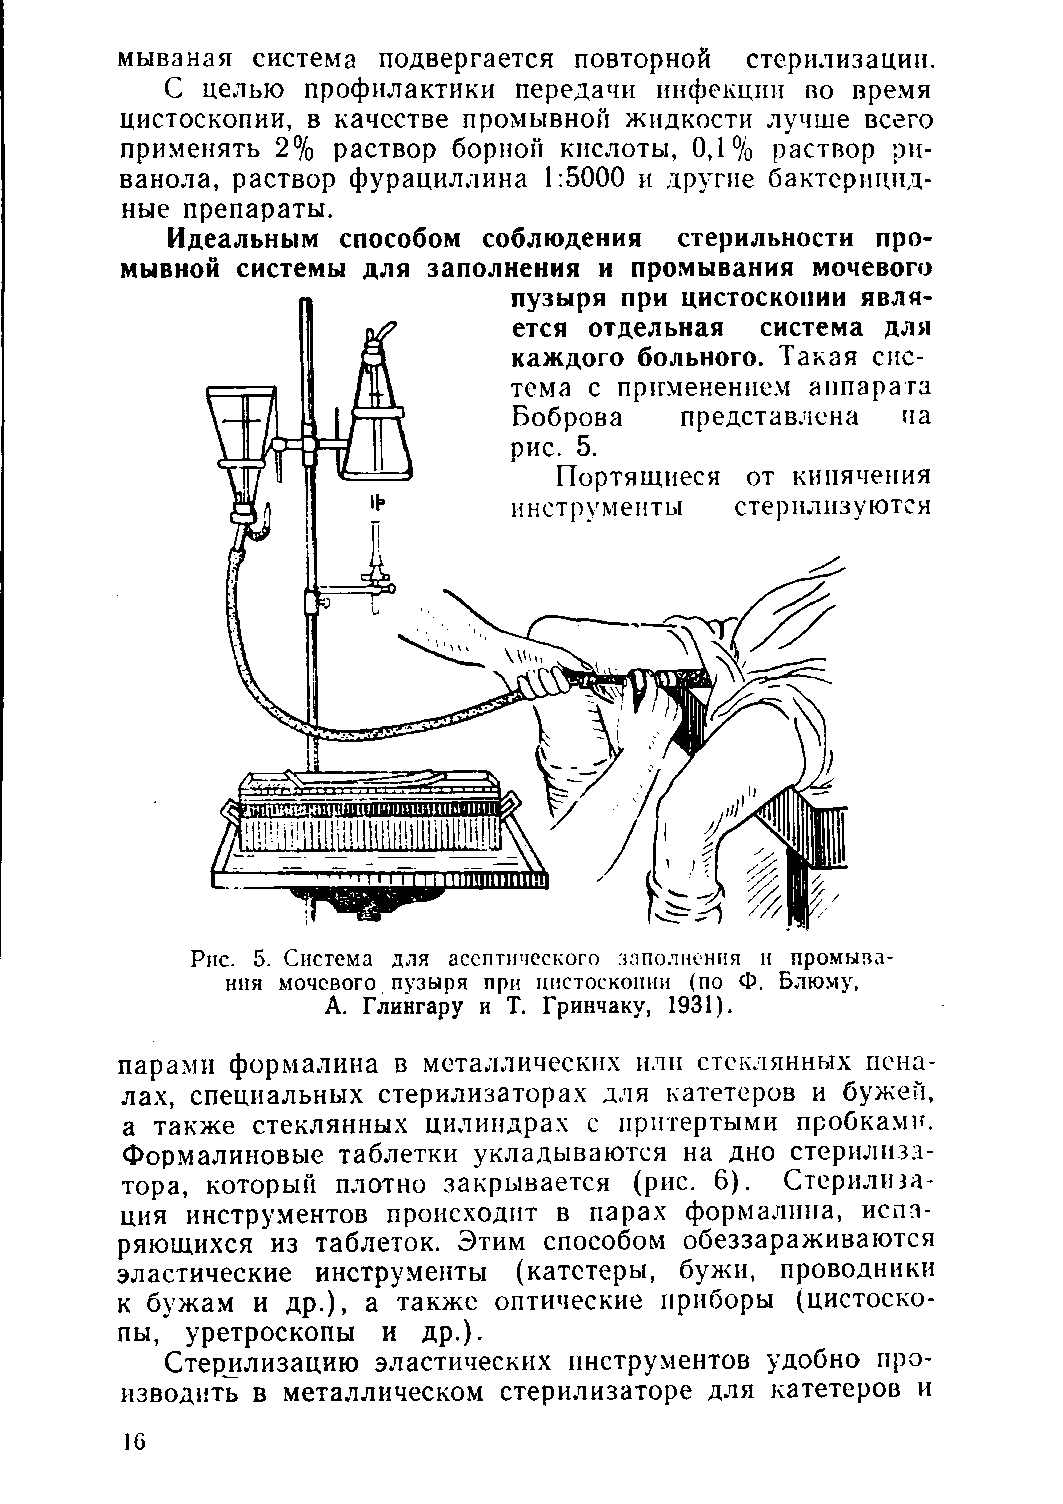 Рис. 5. Система для асептического заполнения н промывания мочевого пузыря при цистоскопии (по Ф. Блюму, А. Глингару и Т. Гринчаку, 1931).